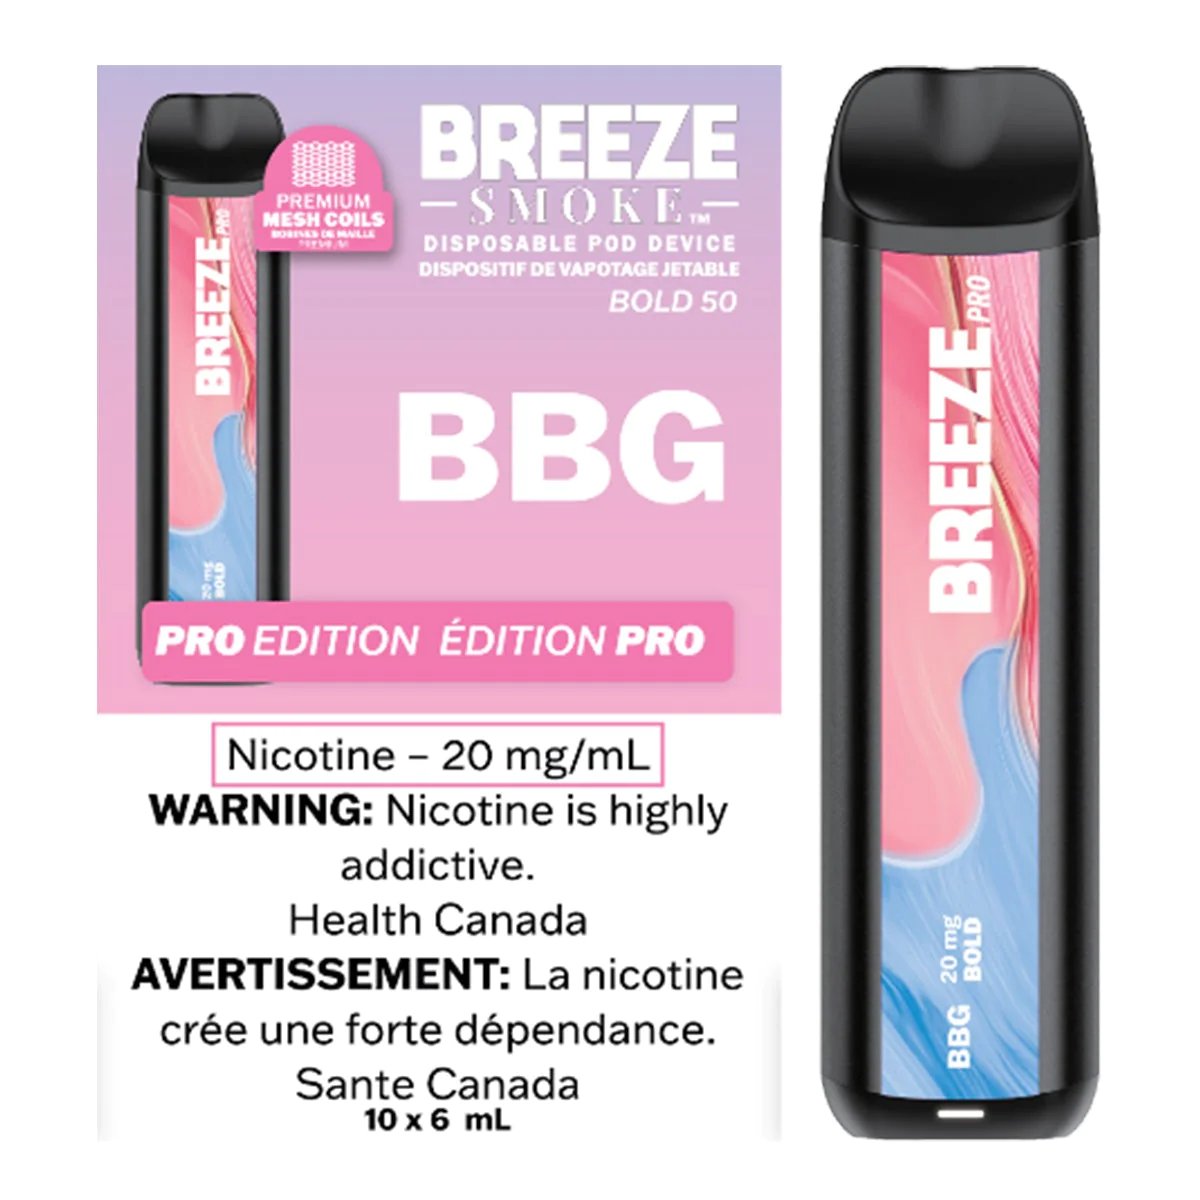 Breeze Pro - BBG - Vape Crush